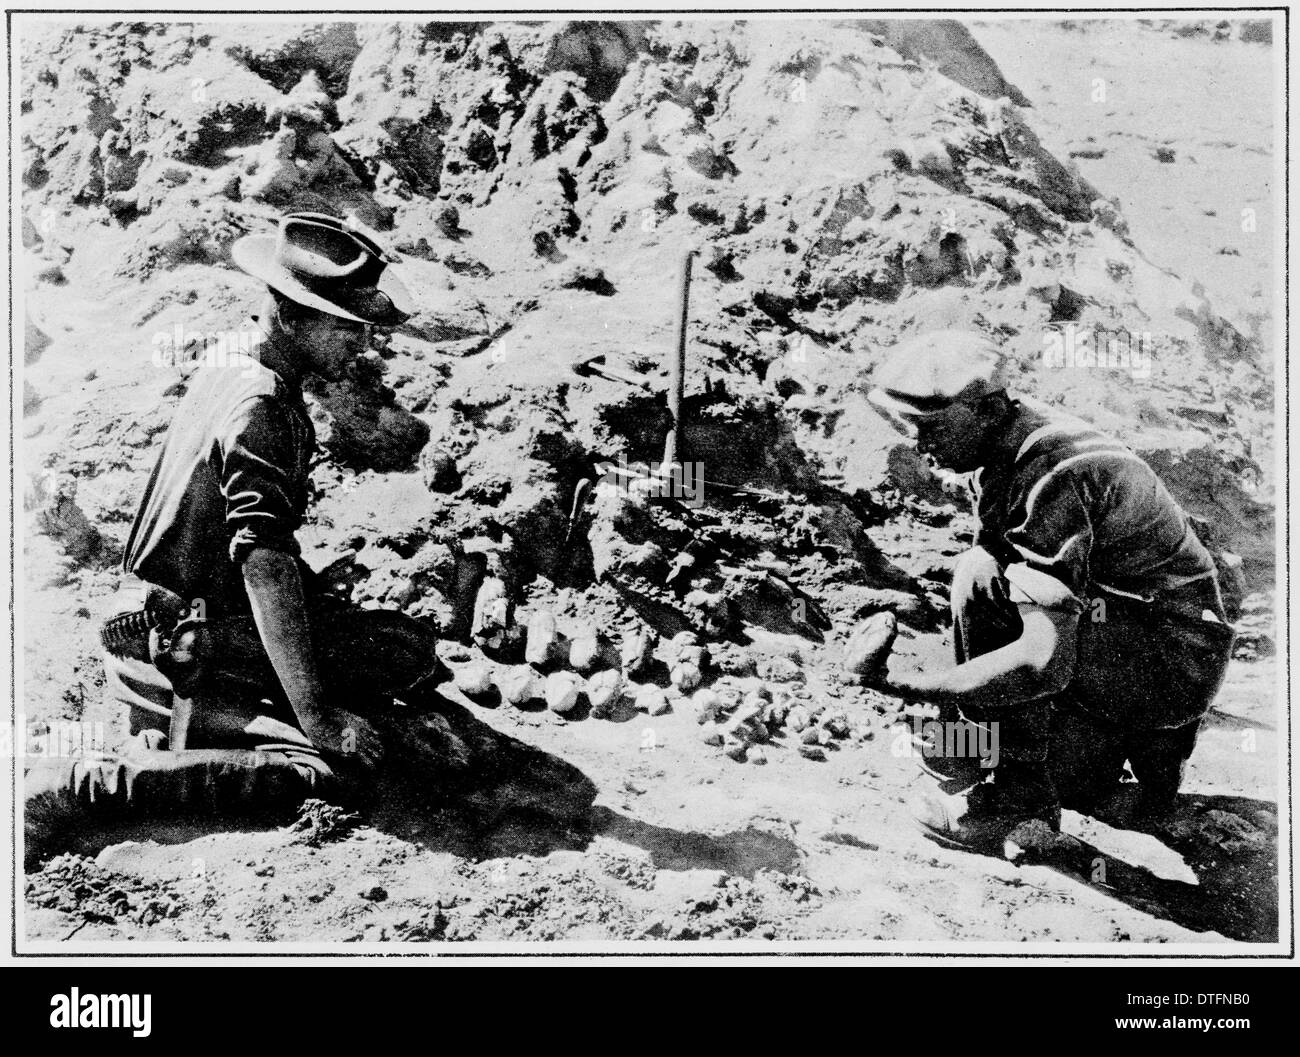 Oeuf de dinosaure excavation, 1925 Banque D'Images